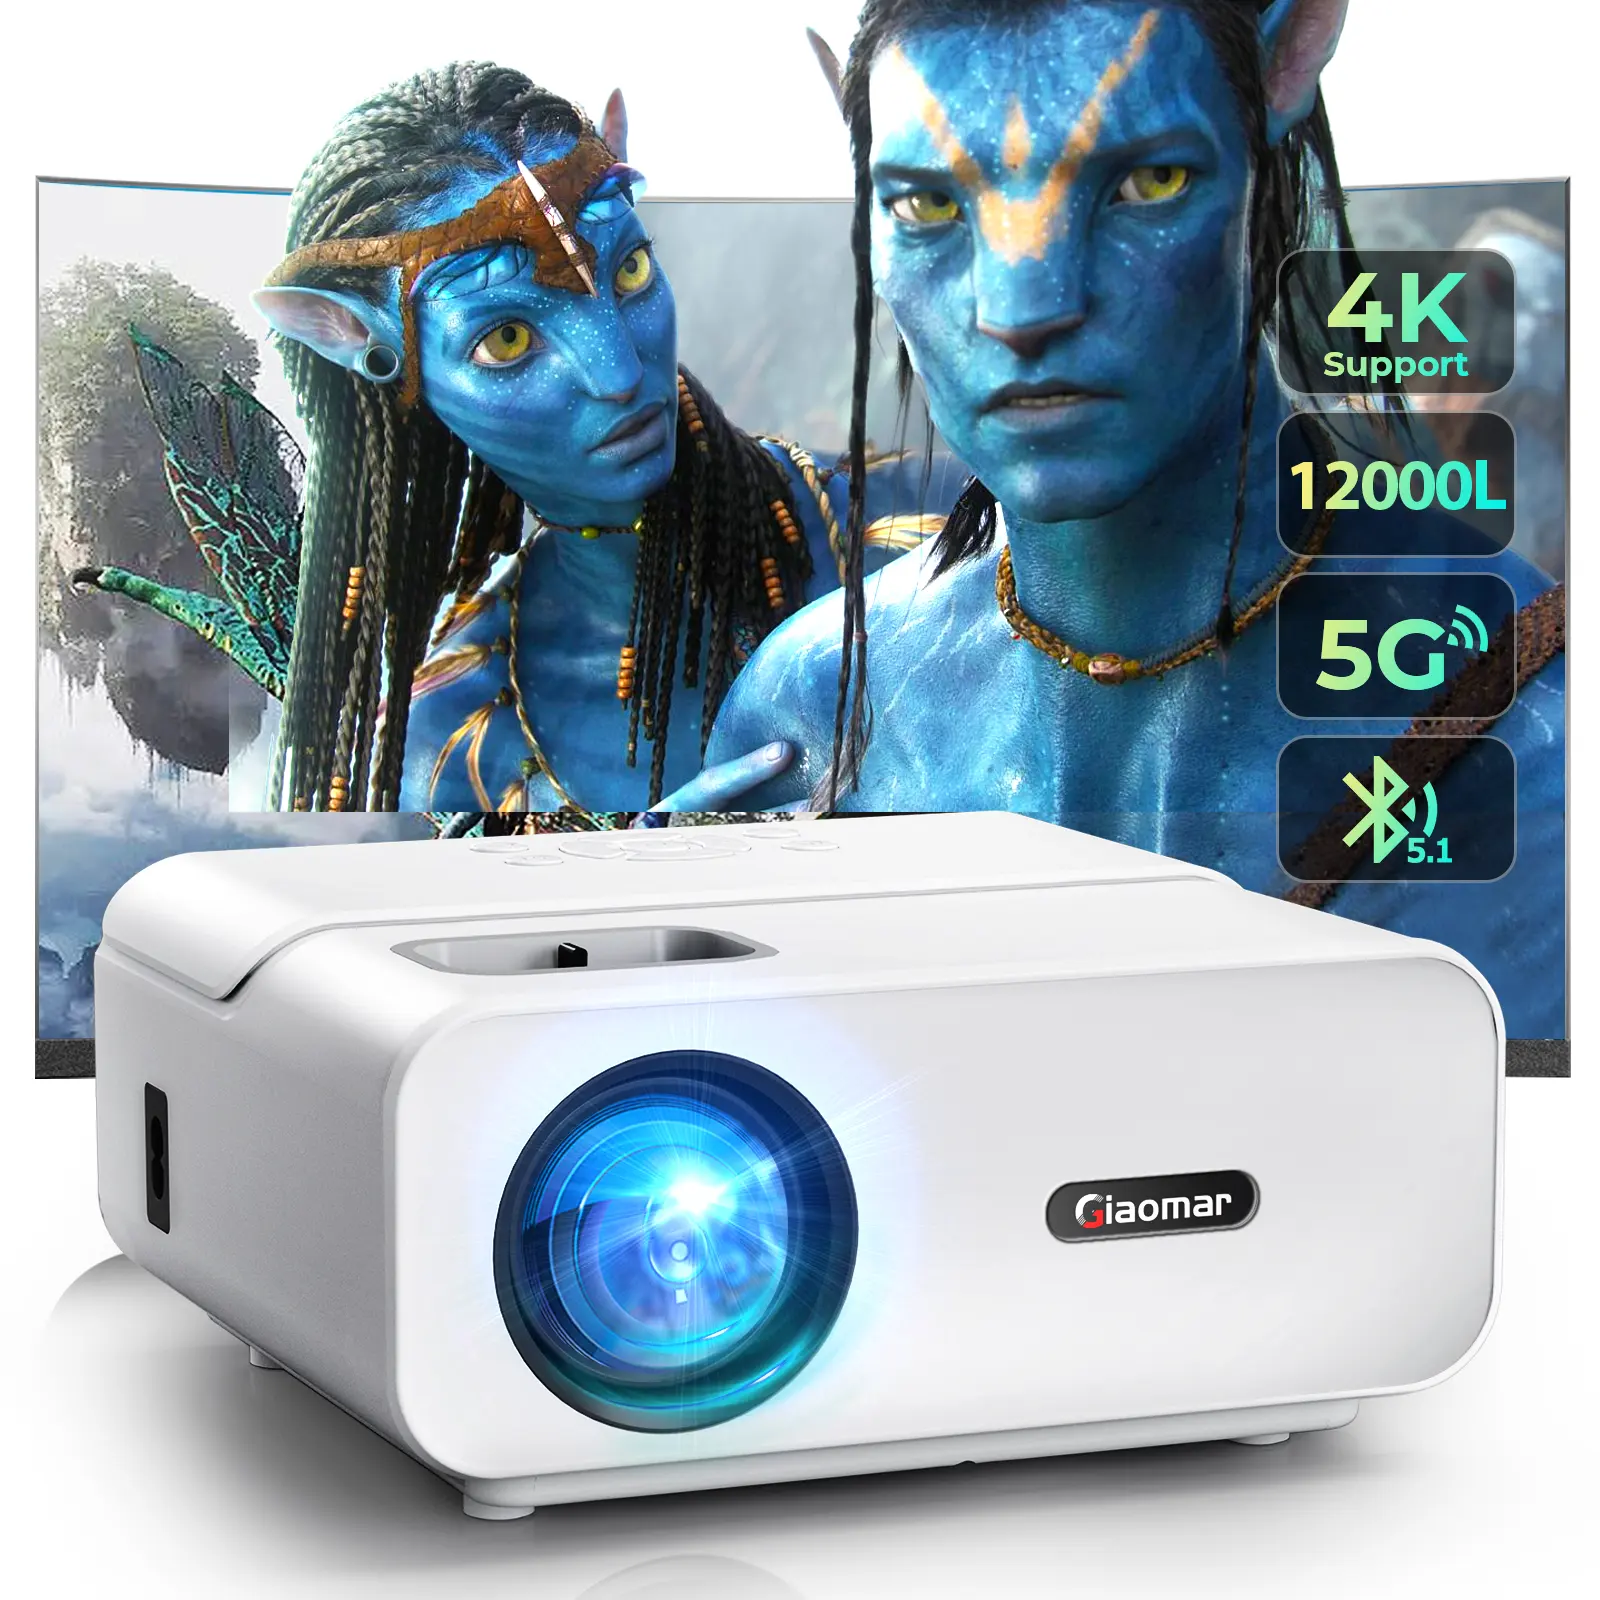 Proiettore Hd supporto 4K 3D Home Cinema Google Os proiettore Beamer proiettore Video intelligente in vendita